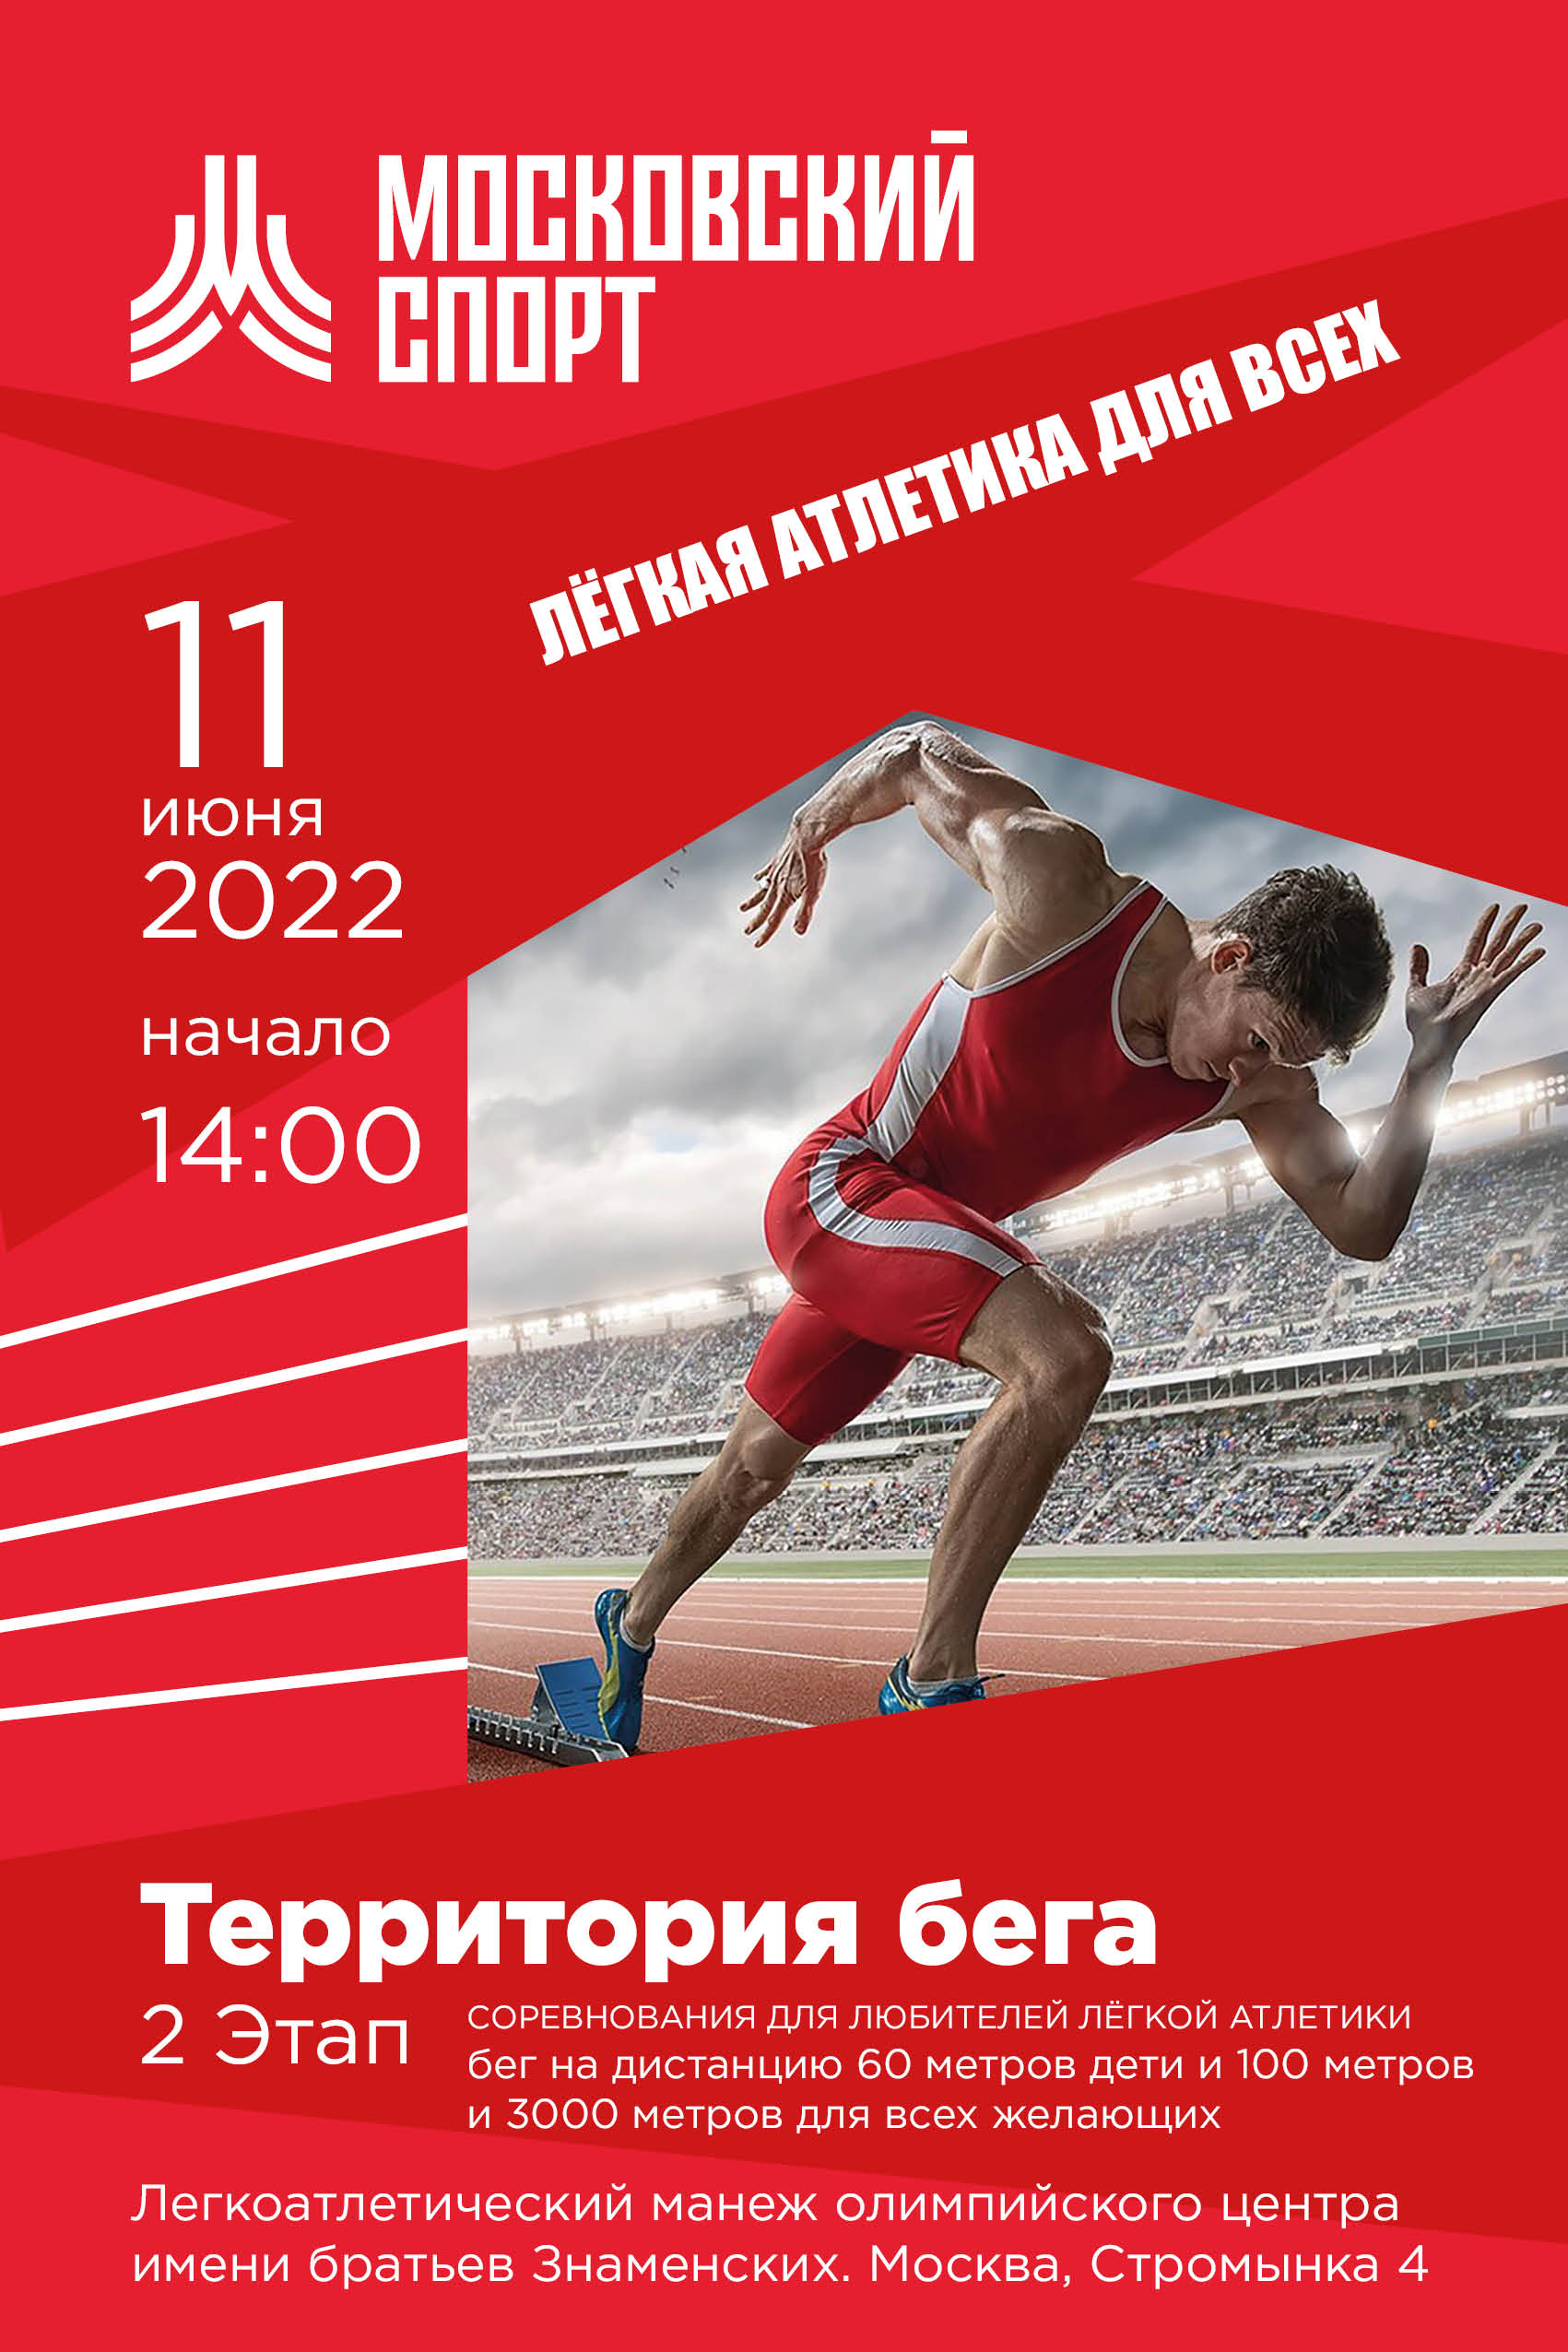 Расписание 2 этап Территории бега — Московская лёгкая атлетика